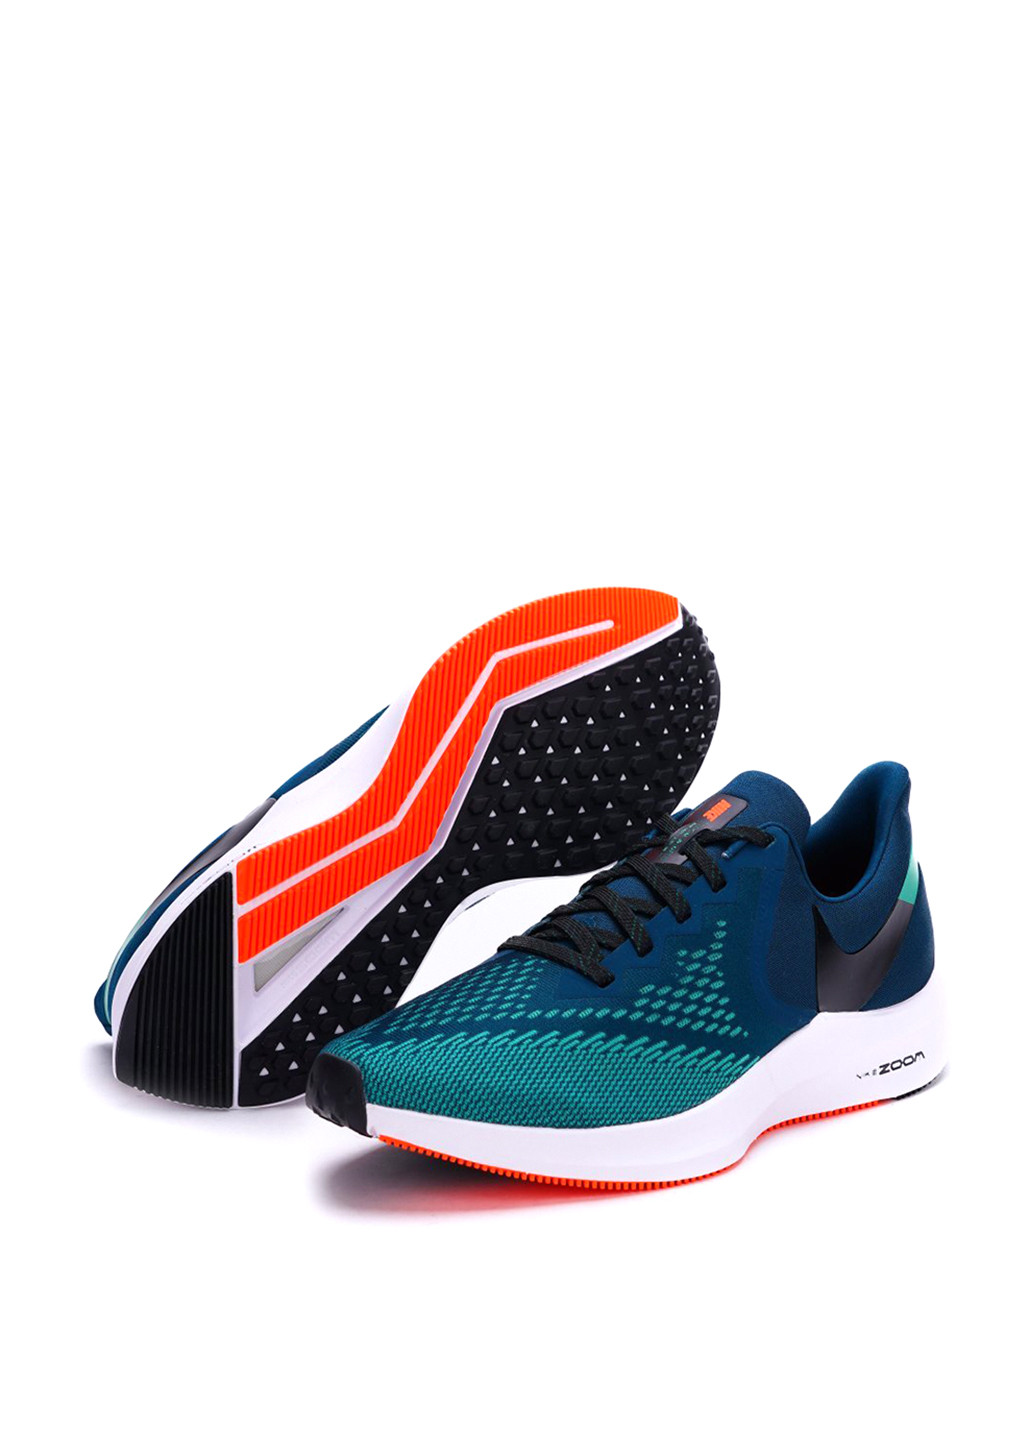 Зеленые всесезонные кроссовки Nike Air Zoom Winflo 6